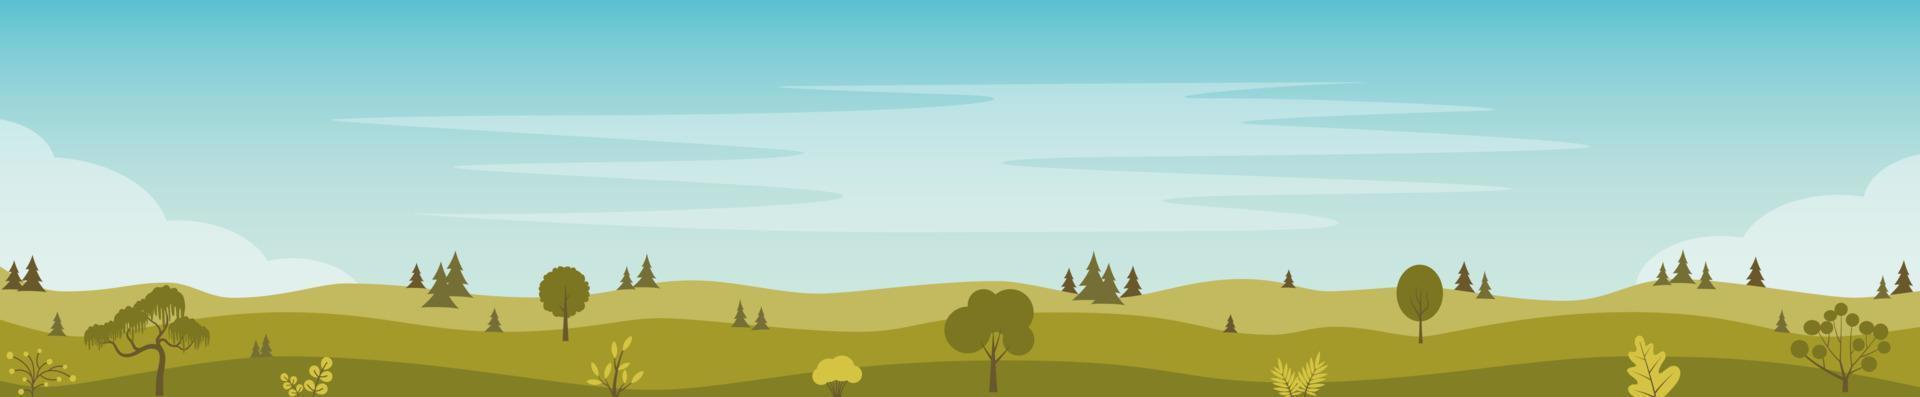 bela paisagem de campos com colinas verdes, árvores, arbustos. paisagem rural. modelo de banner horizontal de fundo rural. ilustração em vetor plana.